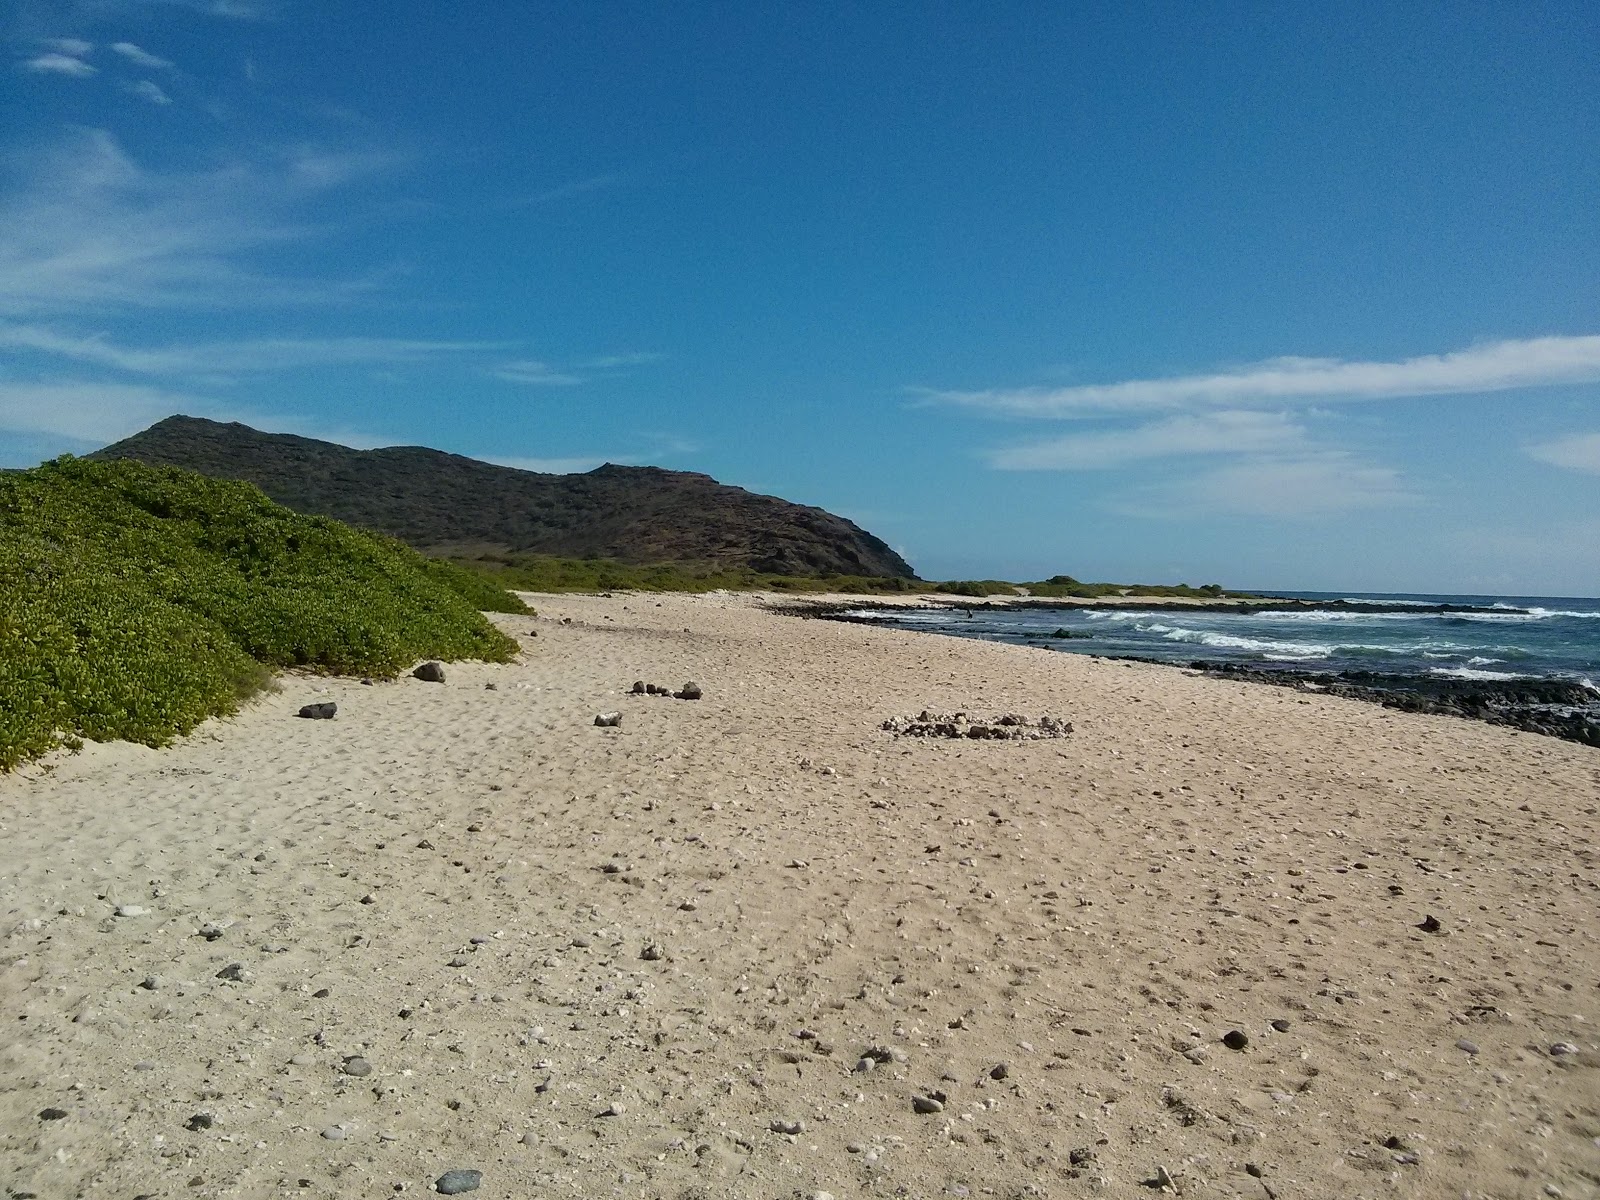 Sandy beach dunes'in fotoğrafı çok temiz temizlik seviyesi ile